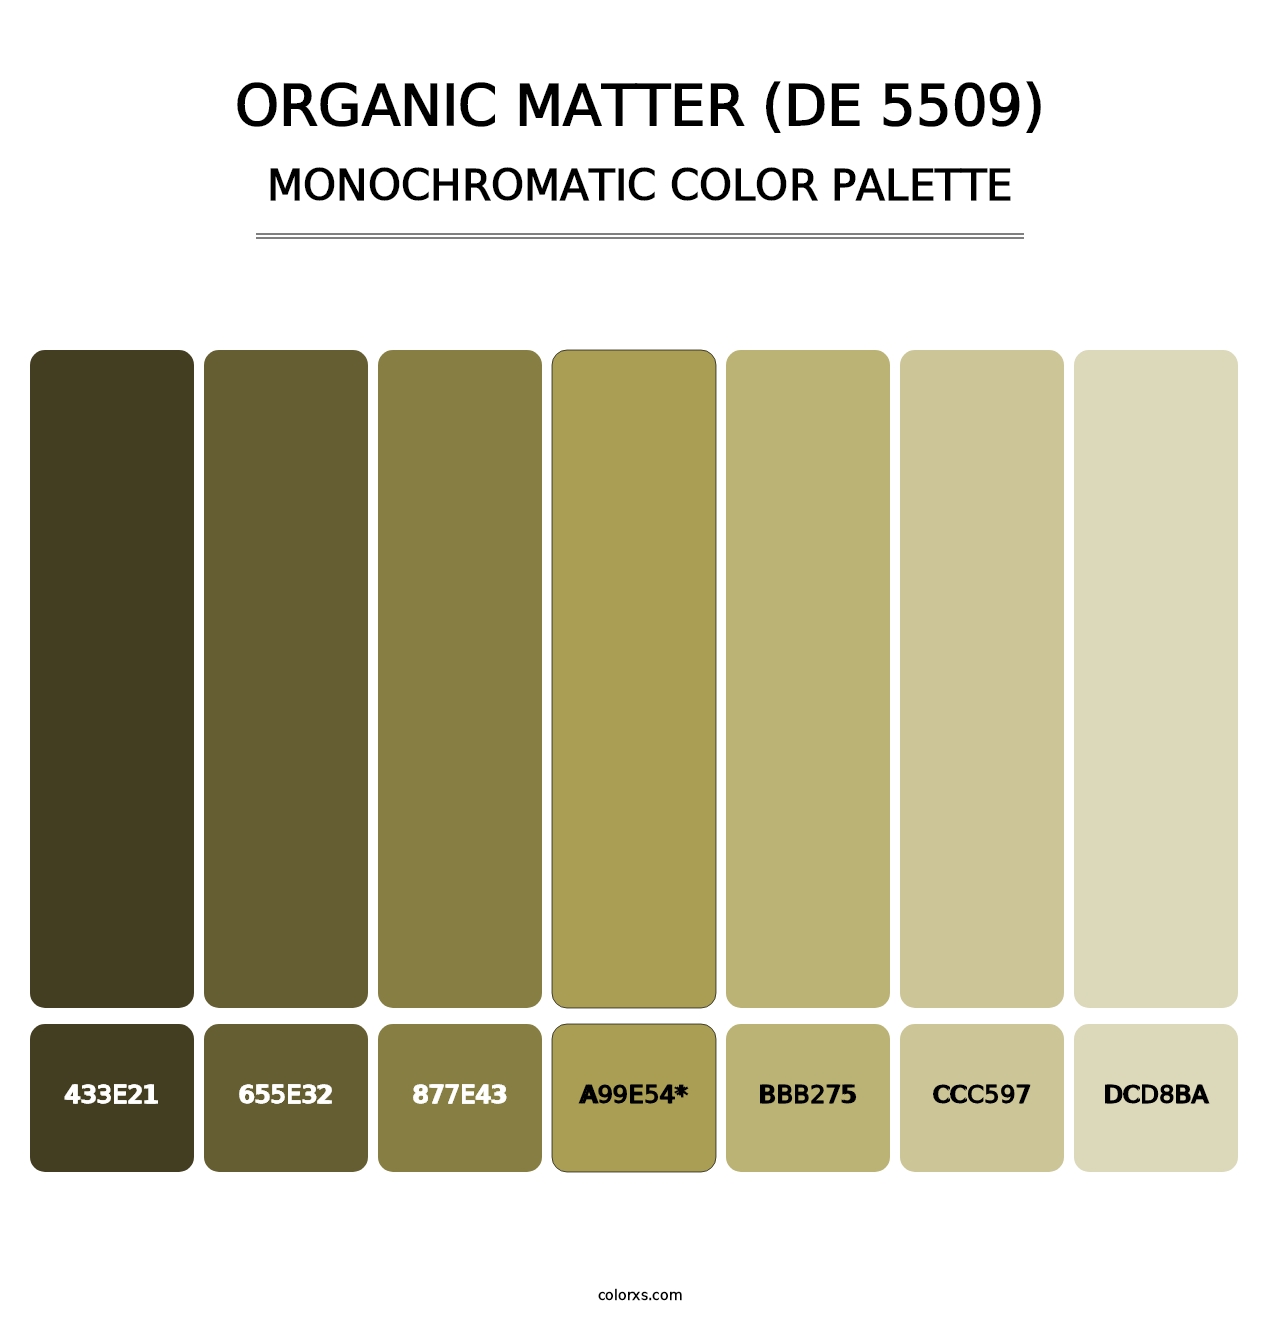 Organic Matter (DE 5509) - Monochromatic Color Palette